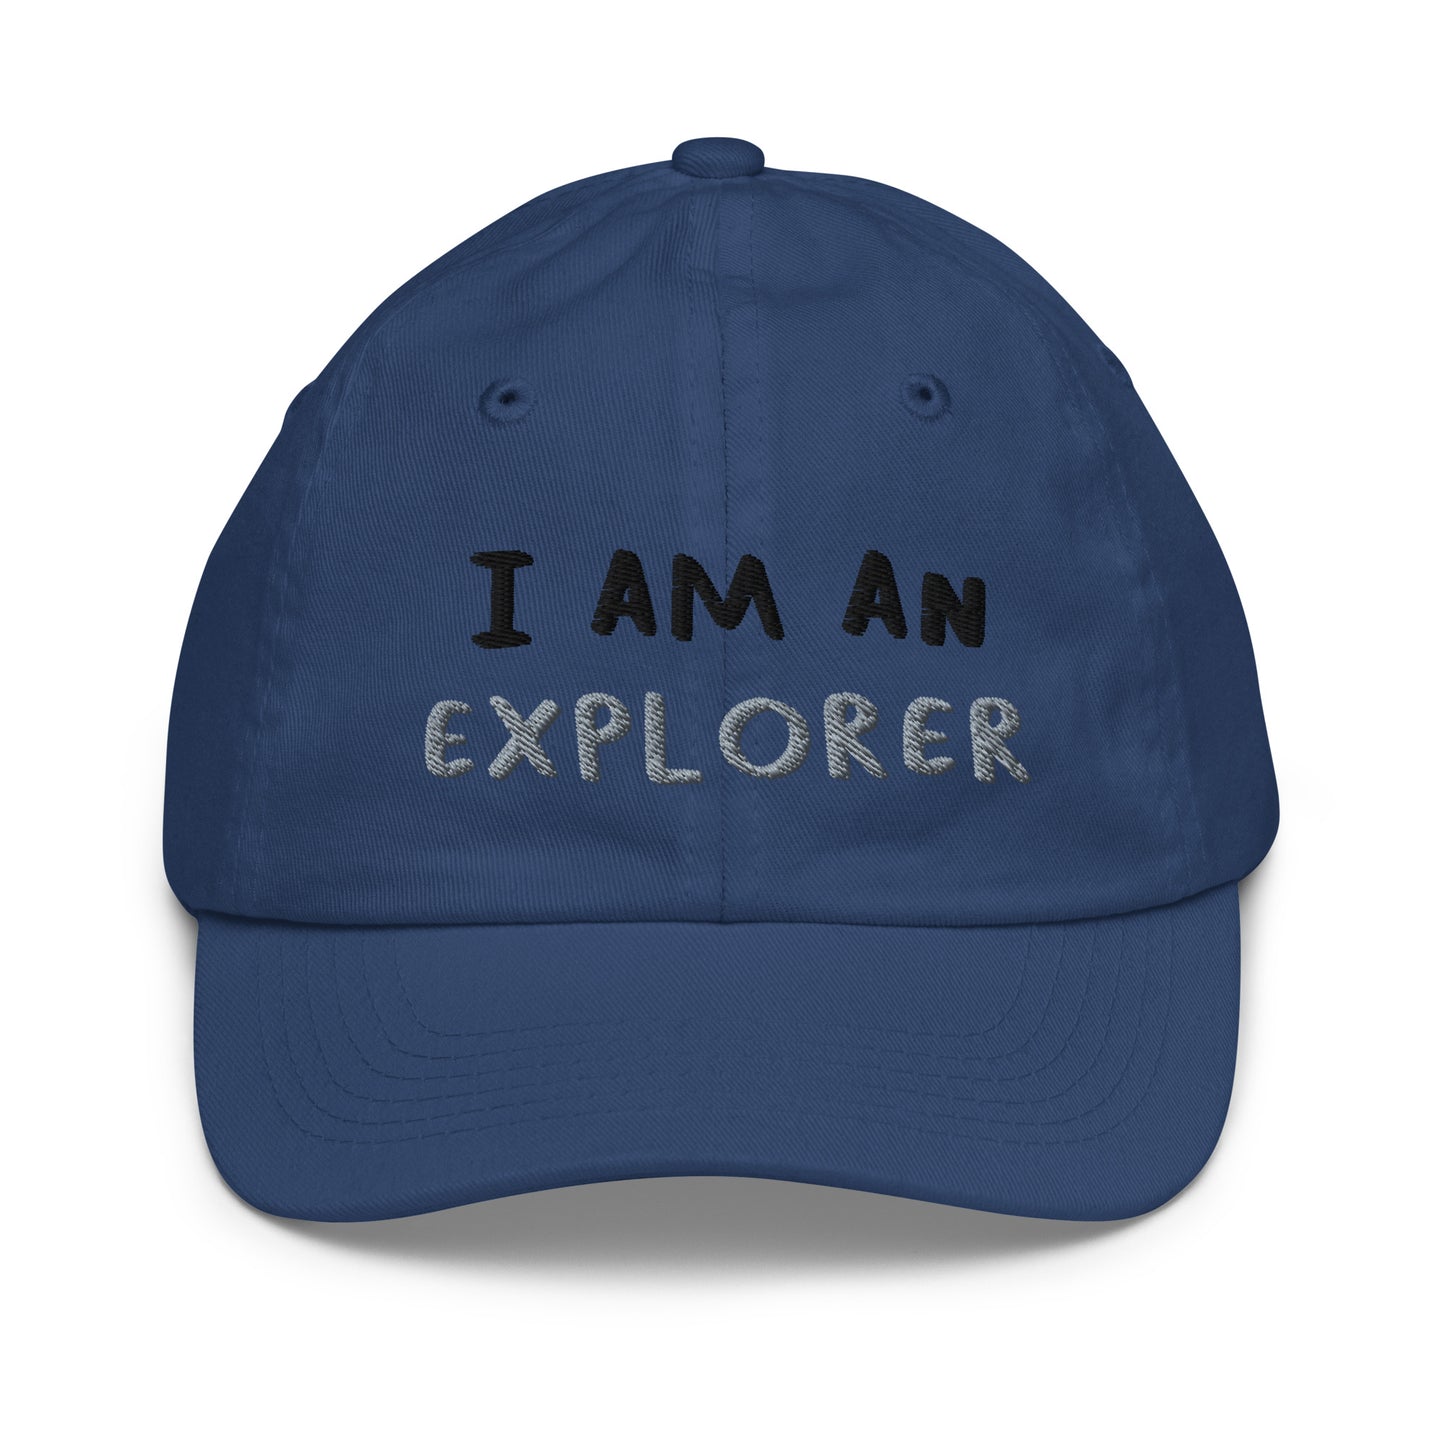 I AM AN EXPLORER - Youth baseball cap